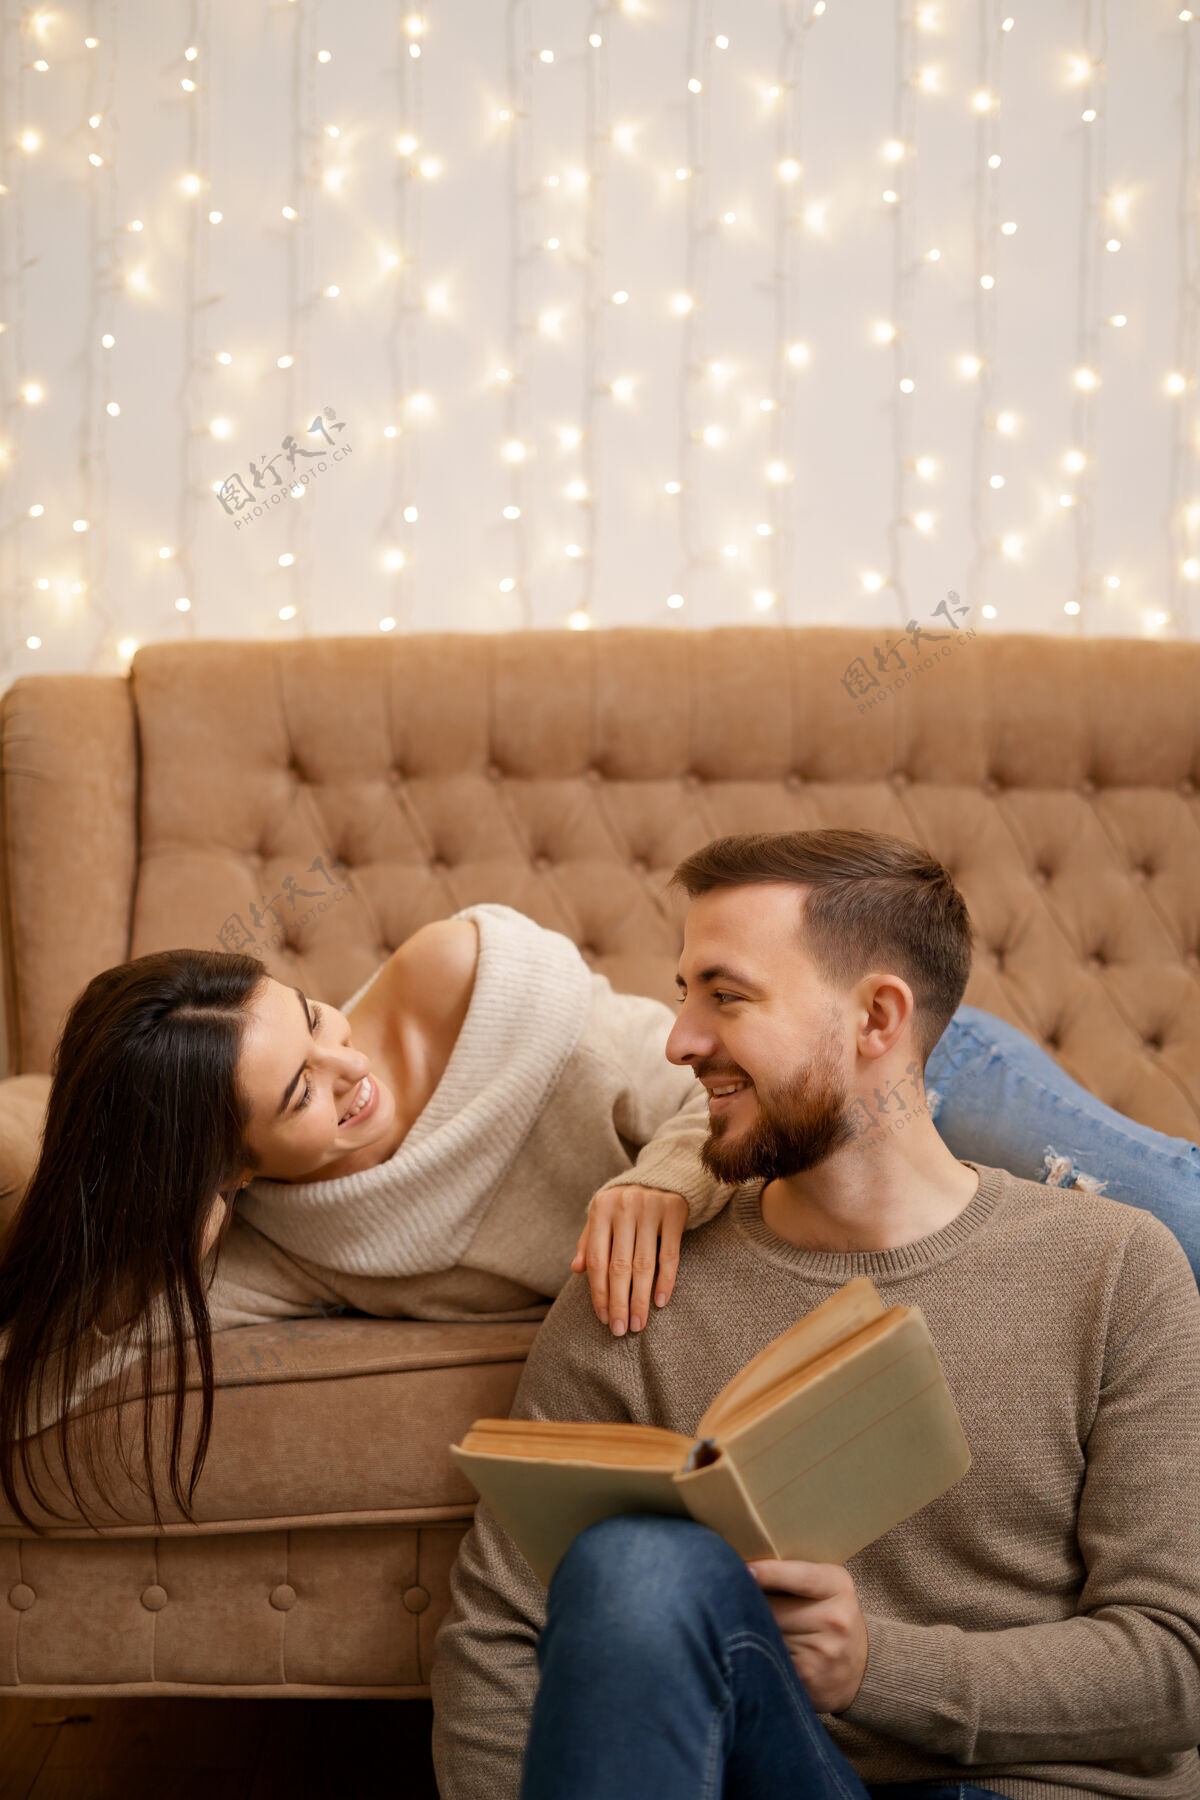 阅读年轻漂亮的情侣 彼此依偎在一起 面带微笑 女人捧着一本书沙发舒适休闲